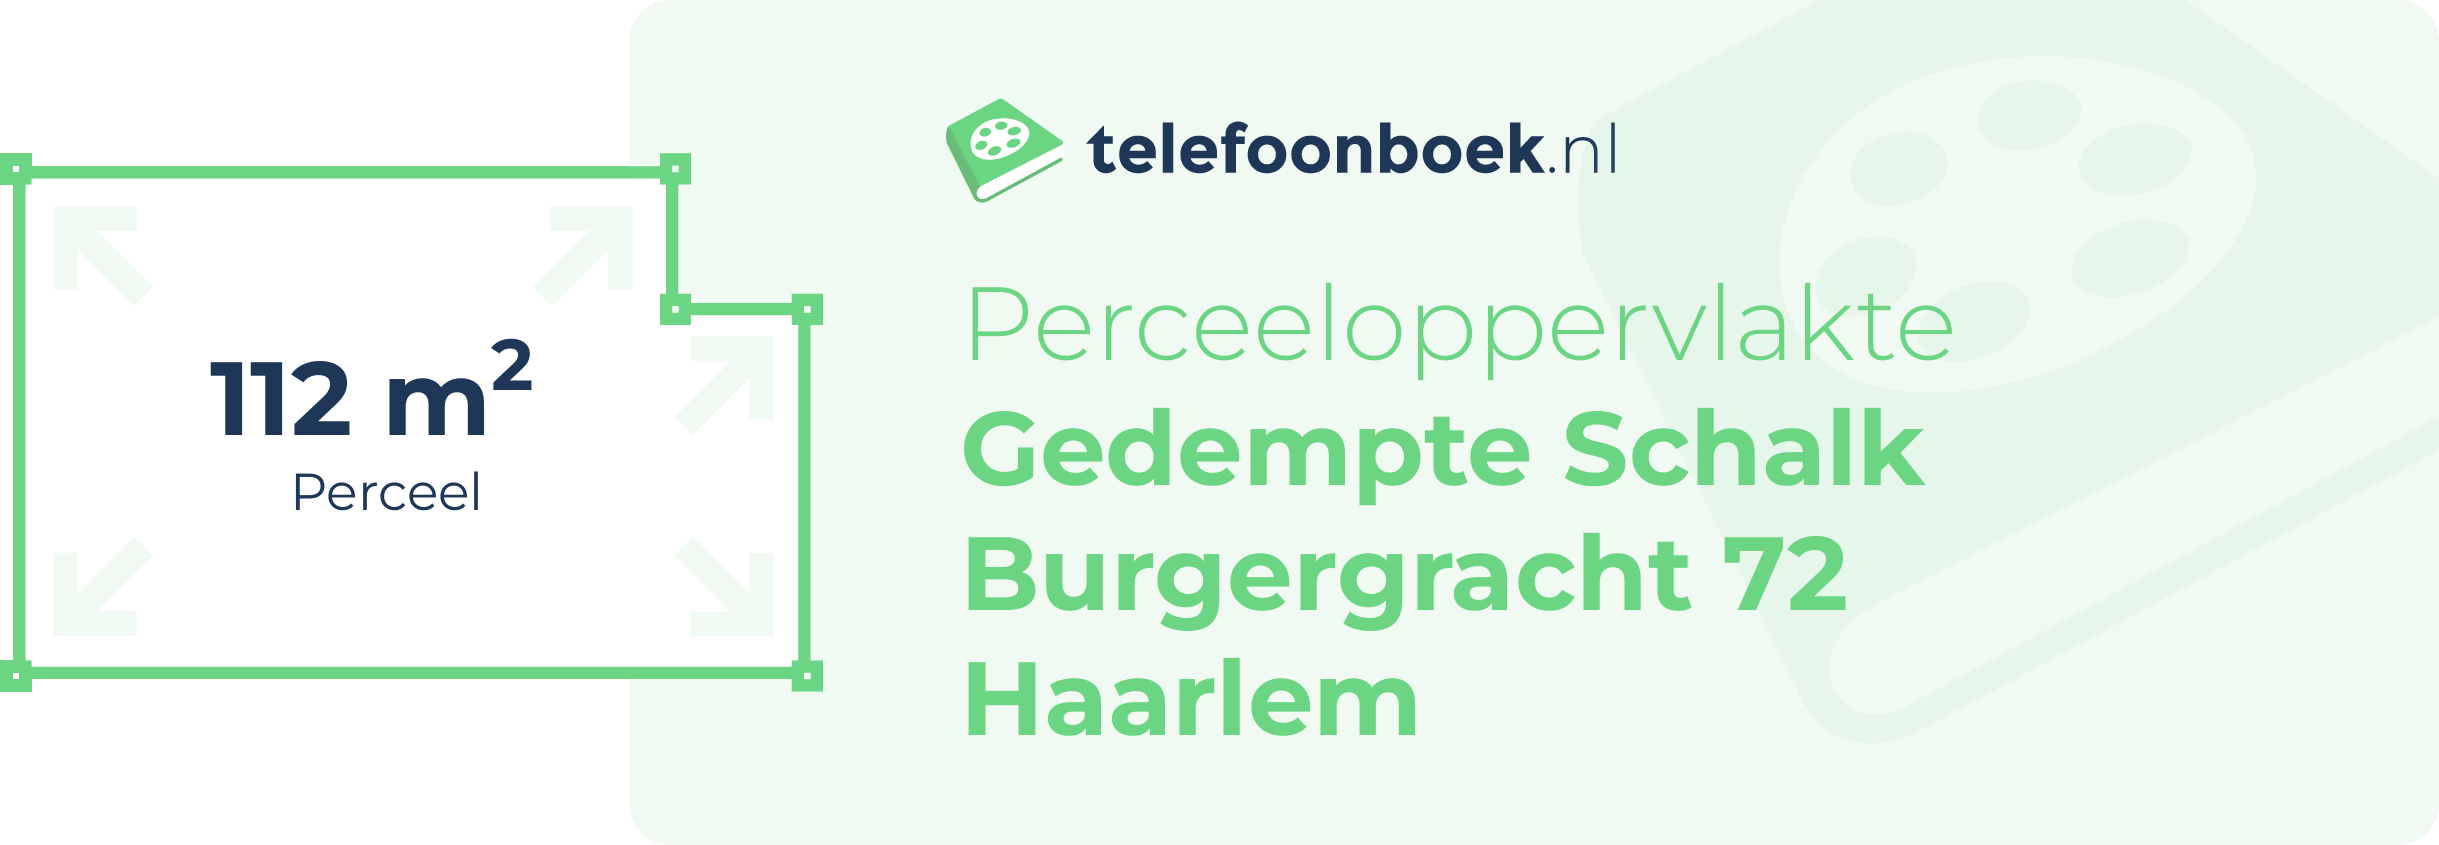 Perceeloppervlakte Gedempte Schalk Burgergracht 72 Haarlem